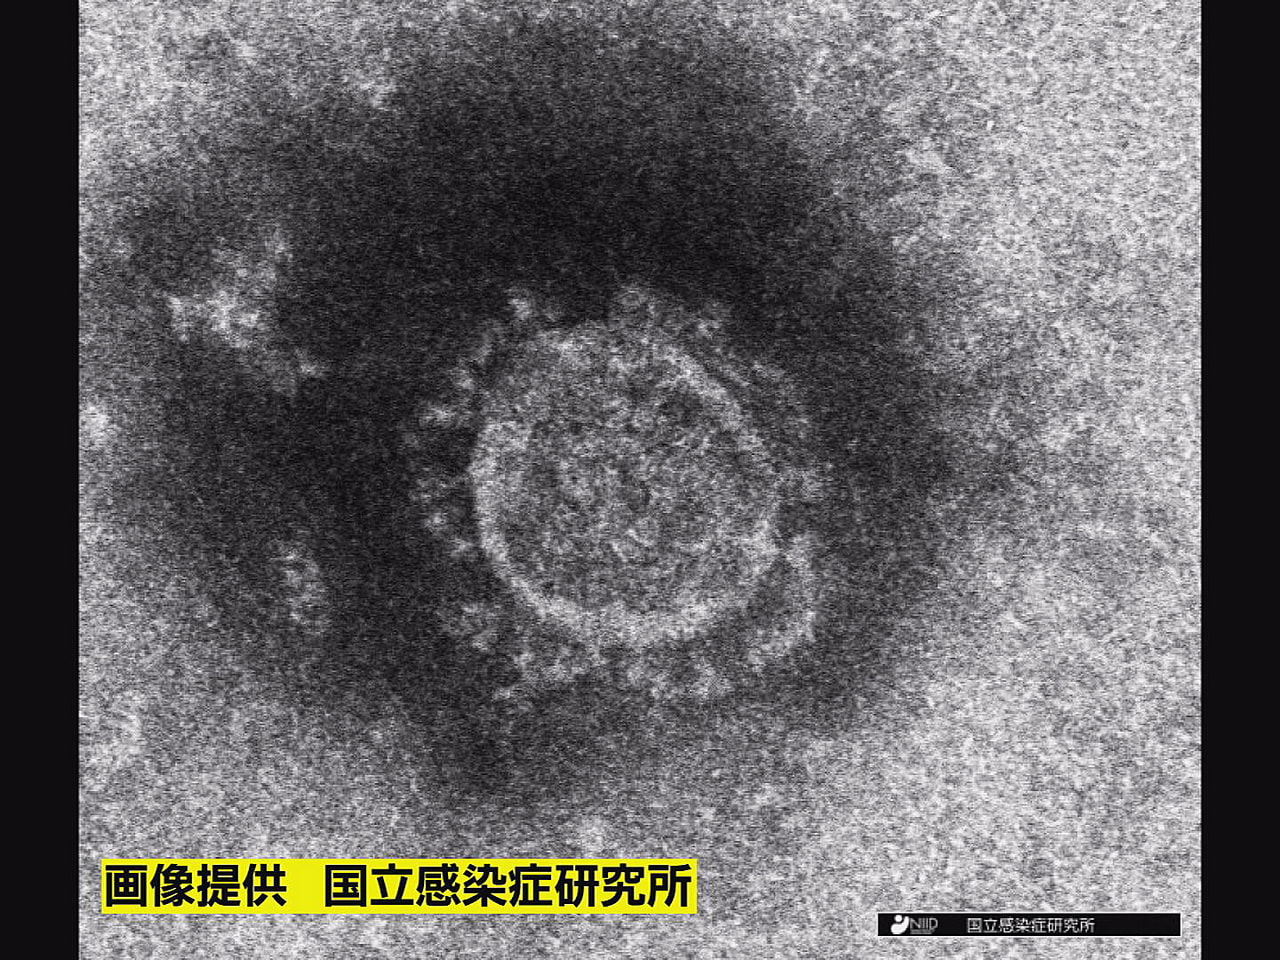 岐阜県は１７日、新型コロナウイルス感染者が新たに１８９人確認されたと発表しました...